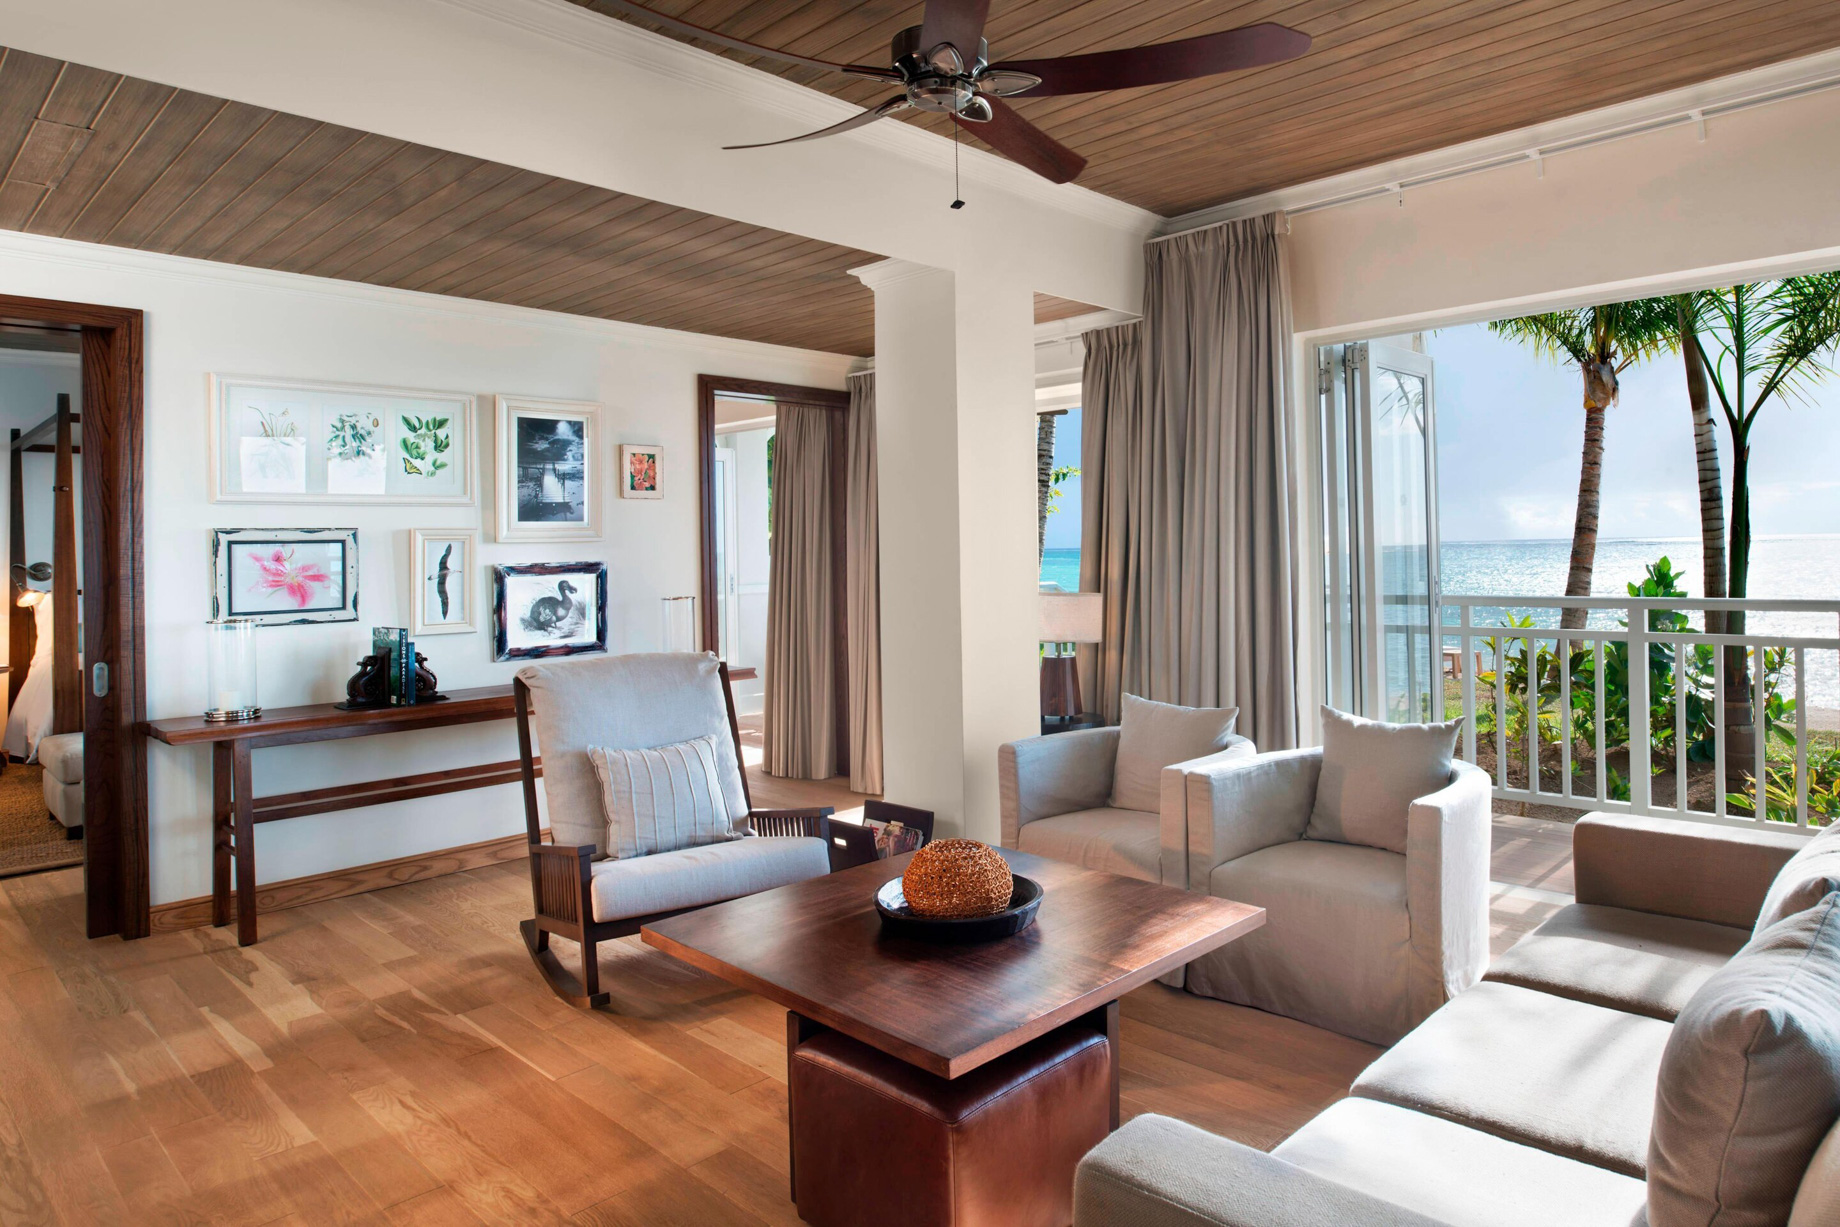 JW Marriott Mauritius Resort - Mauritius - Beachfront Access Suite Living Room